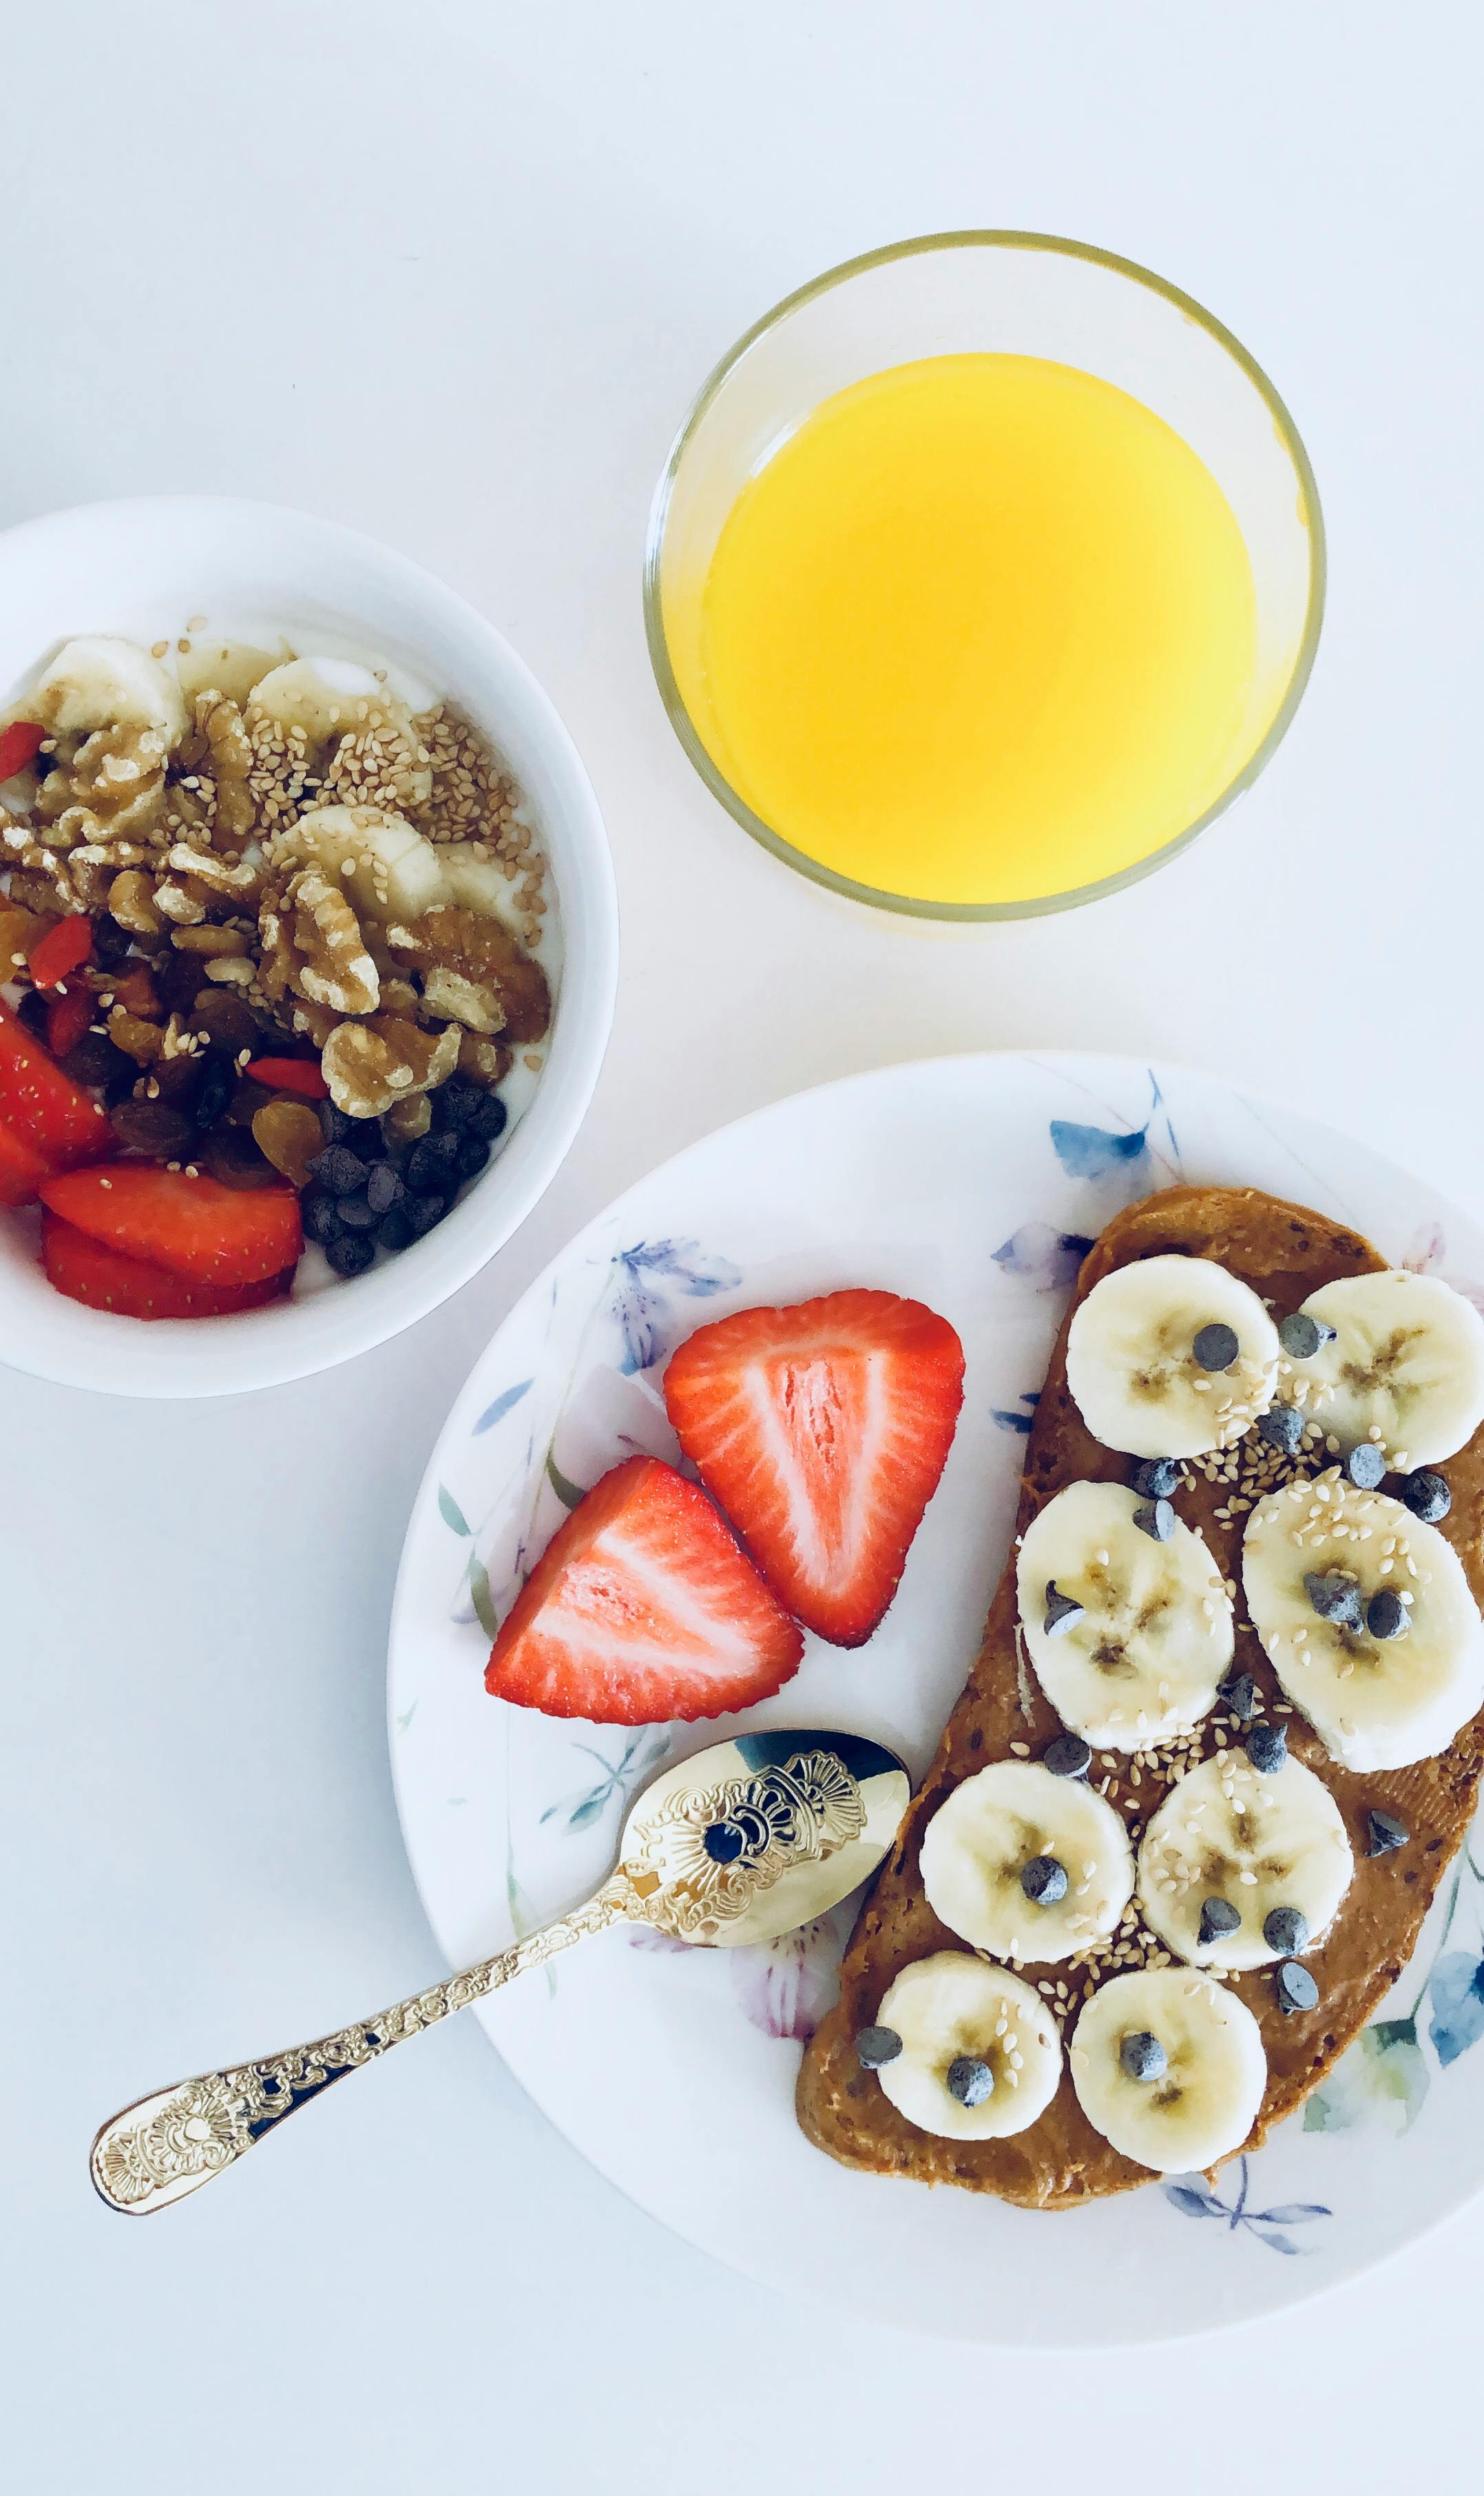 healthy breakfast food images